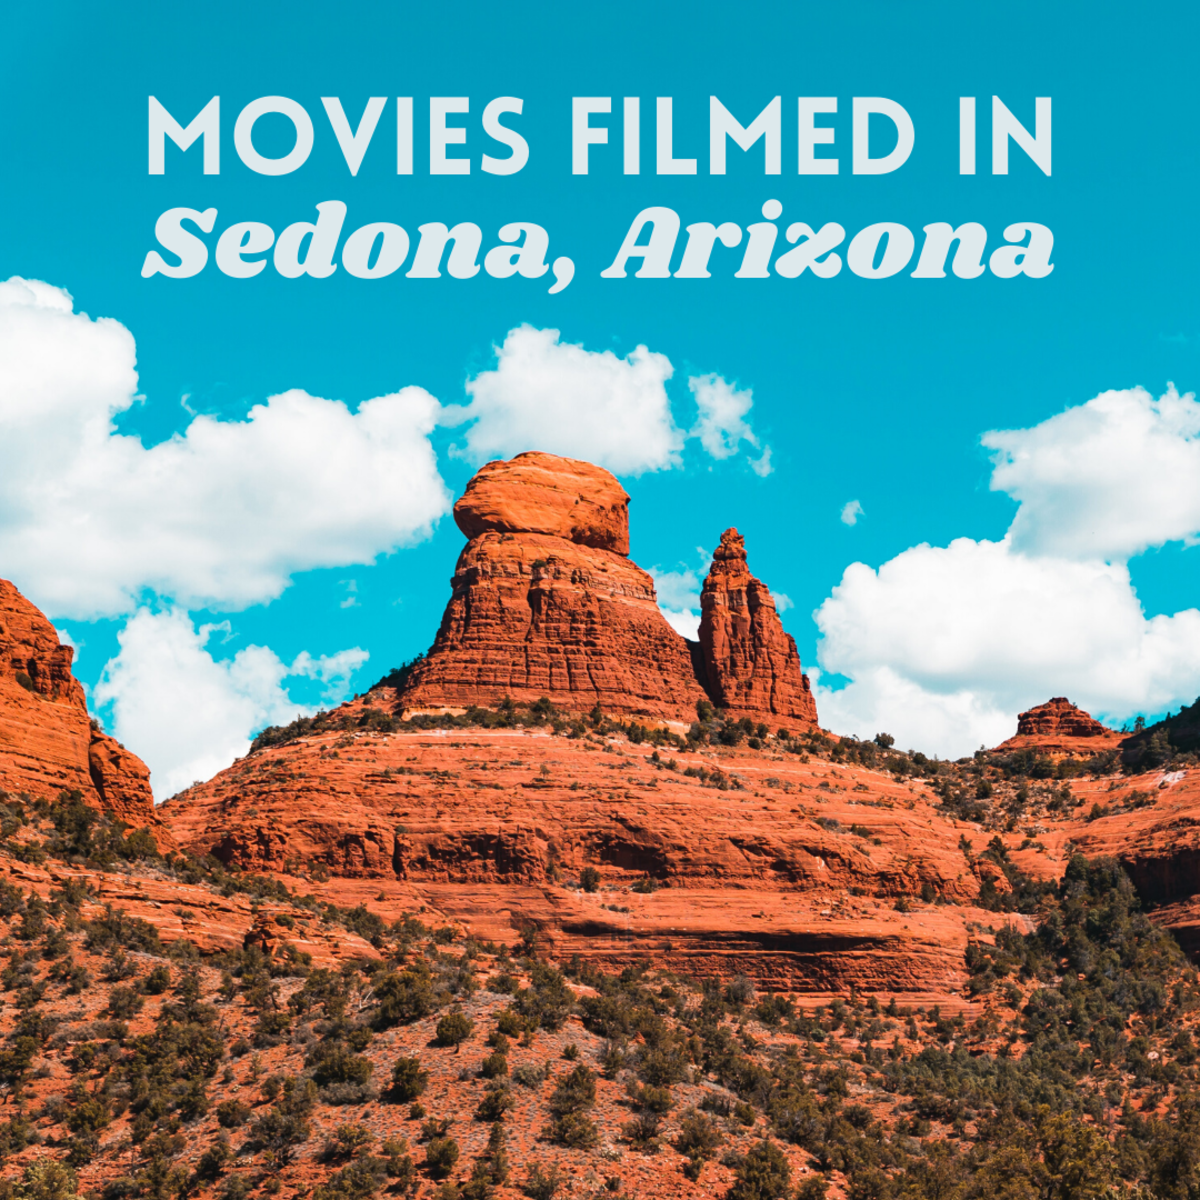 Seven Memorable Movies Filmed in Sedona, Arizona